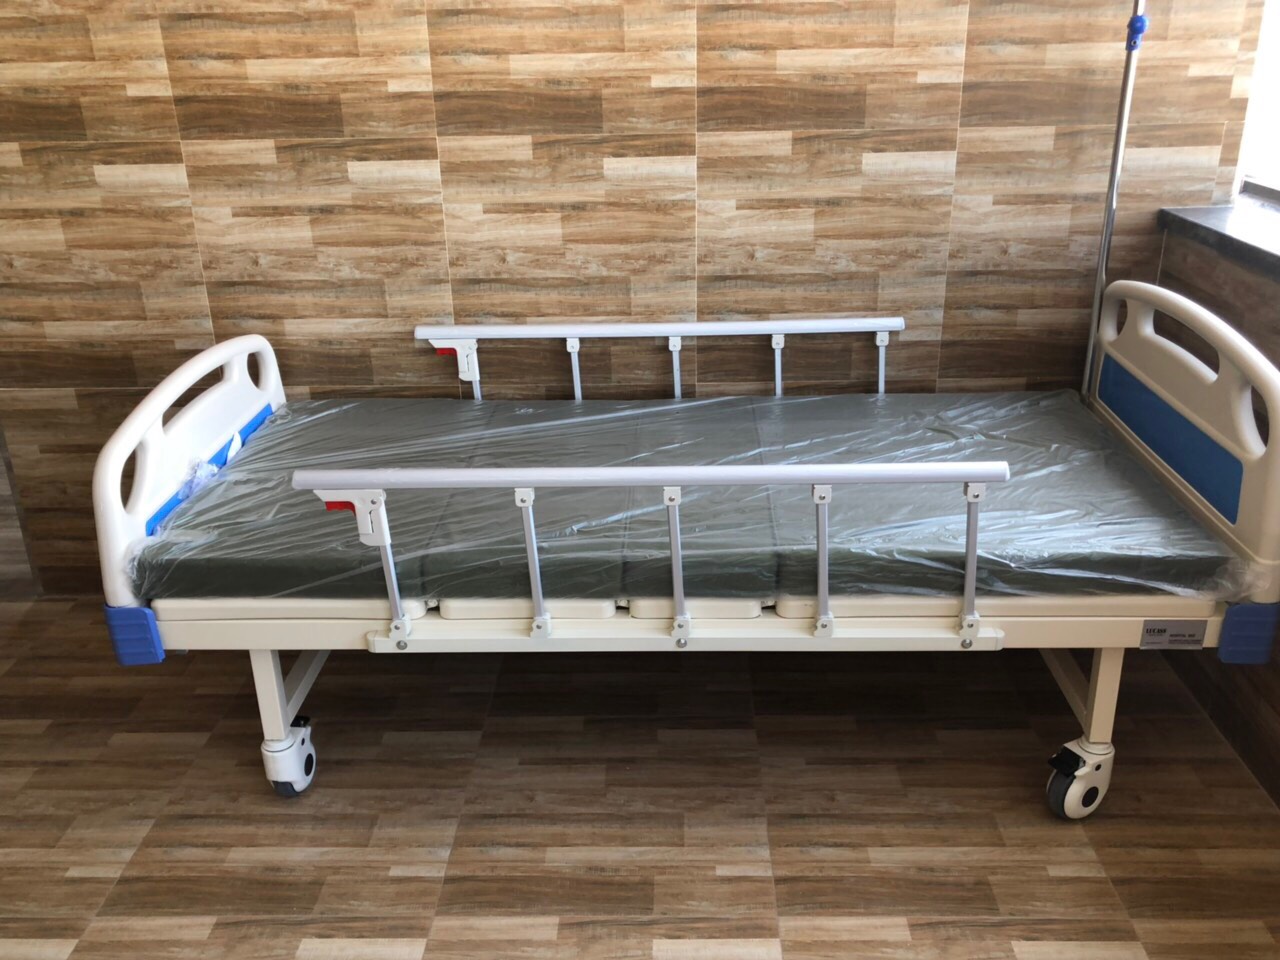 Hướng dẫn chọn mua giường y tế cho người già phù hợp với tình trạng người bệnh